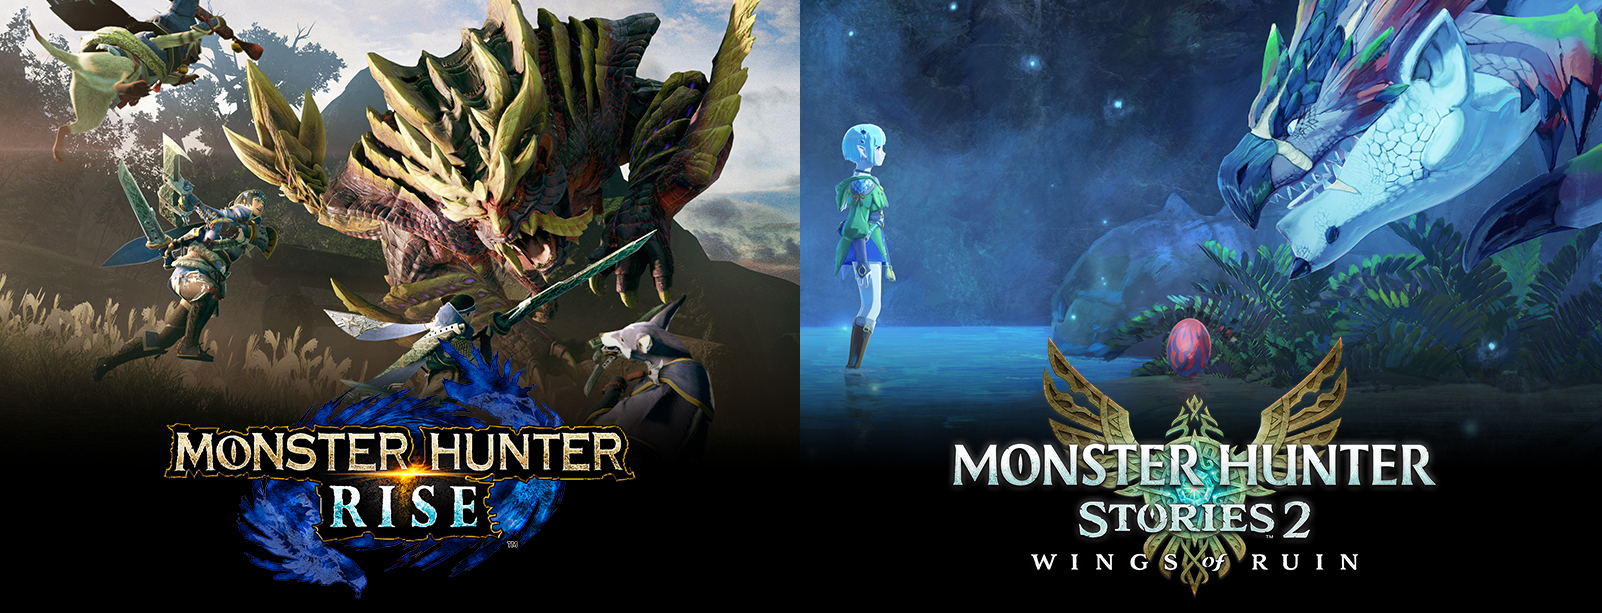 Monster Hunter Anniversary Day 2 - New Monster Hunter Rise